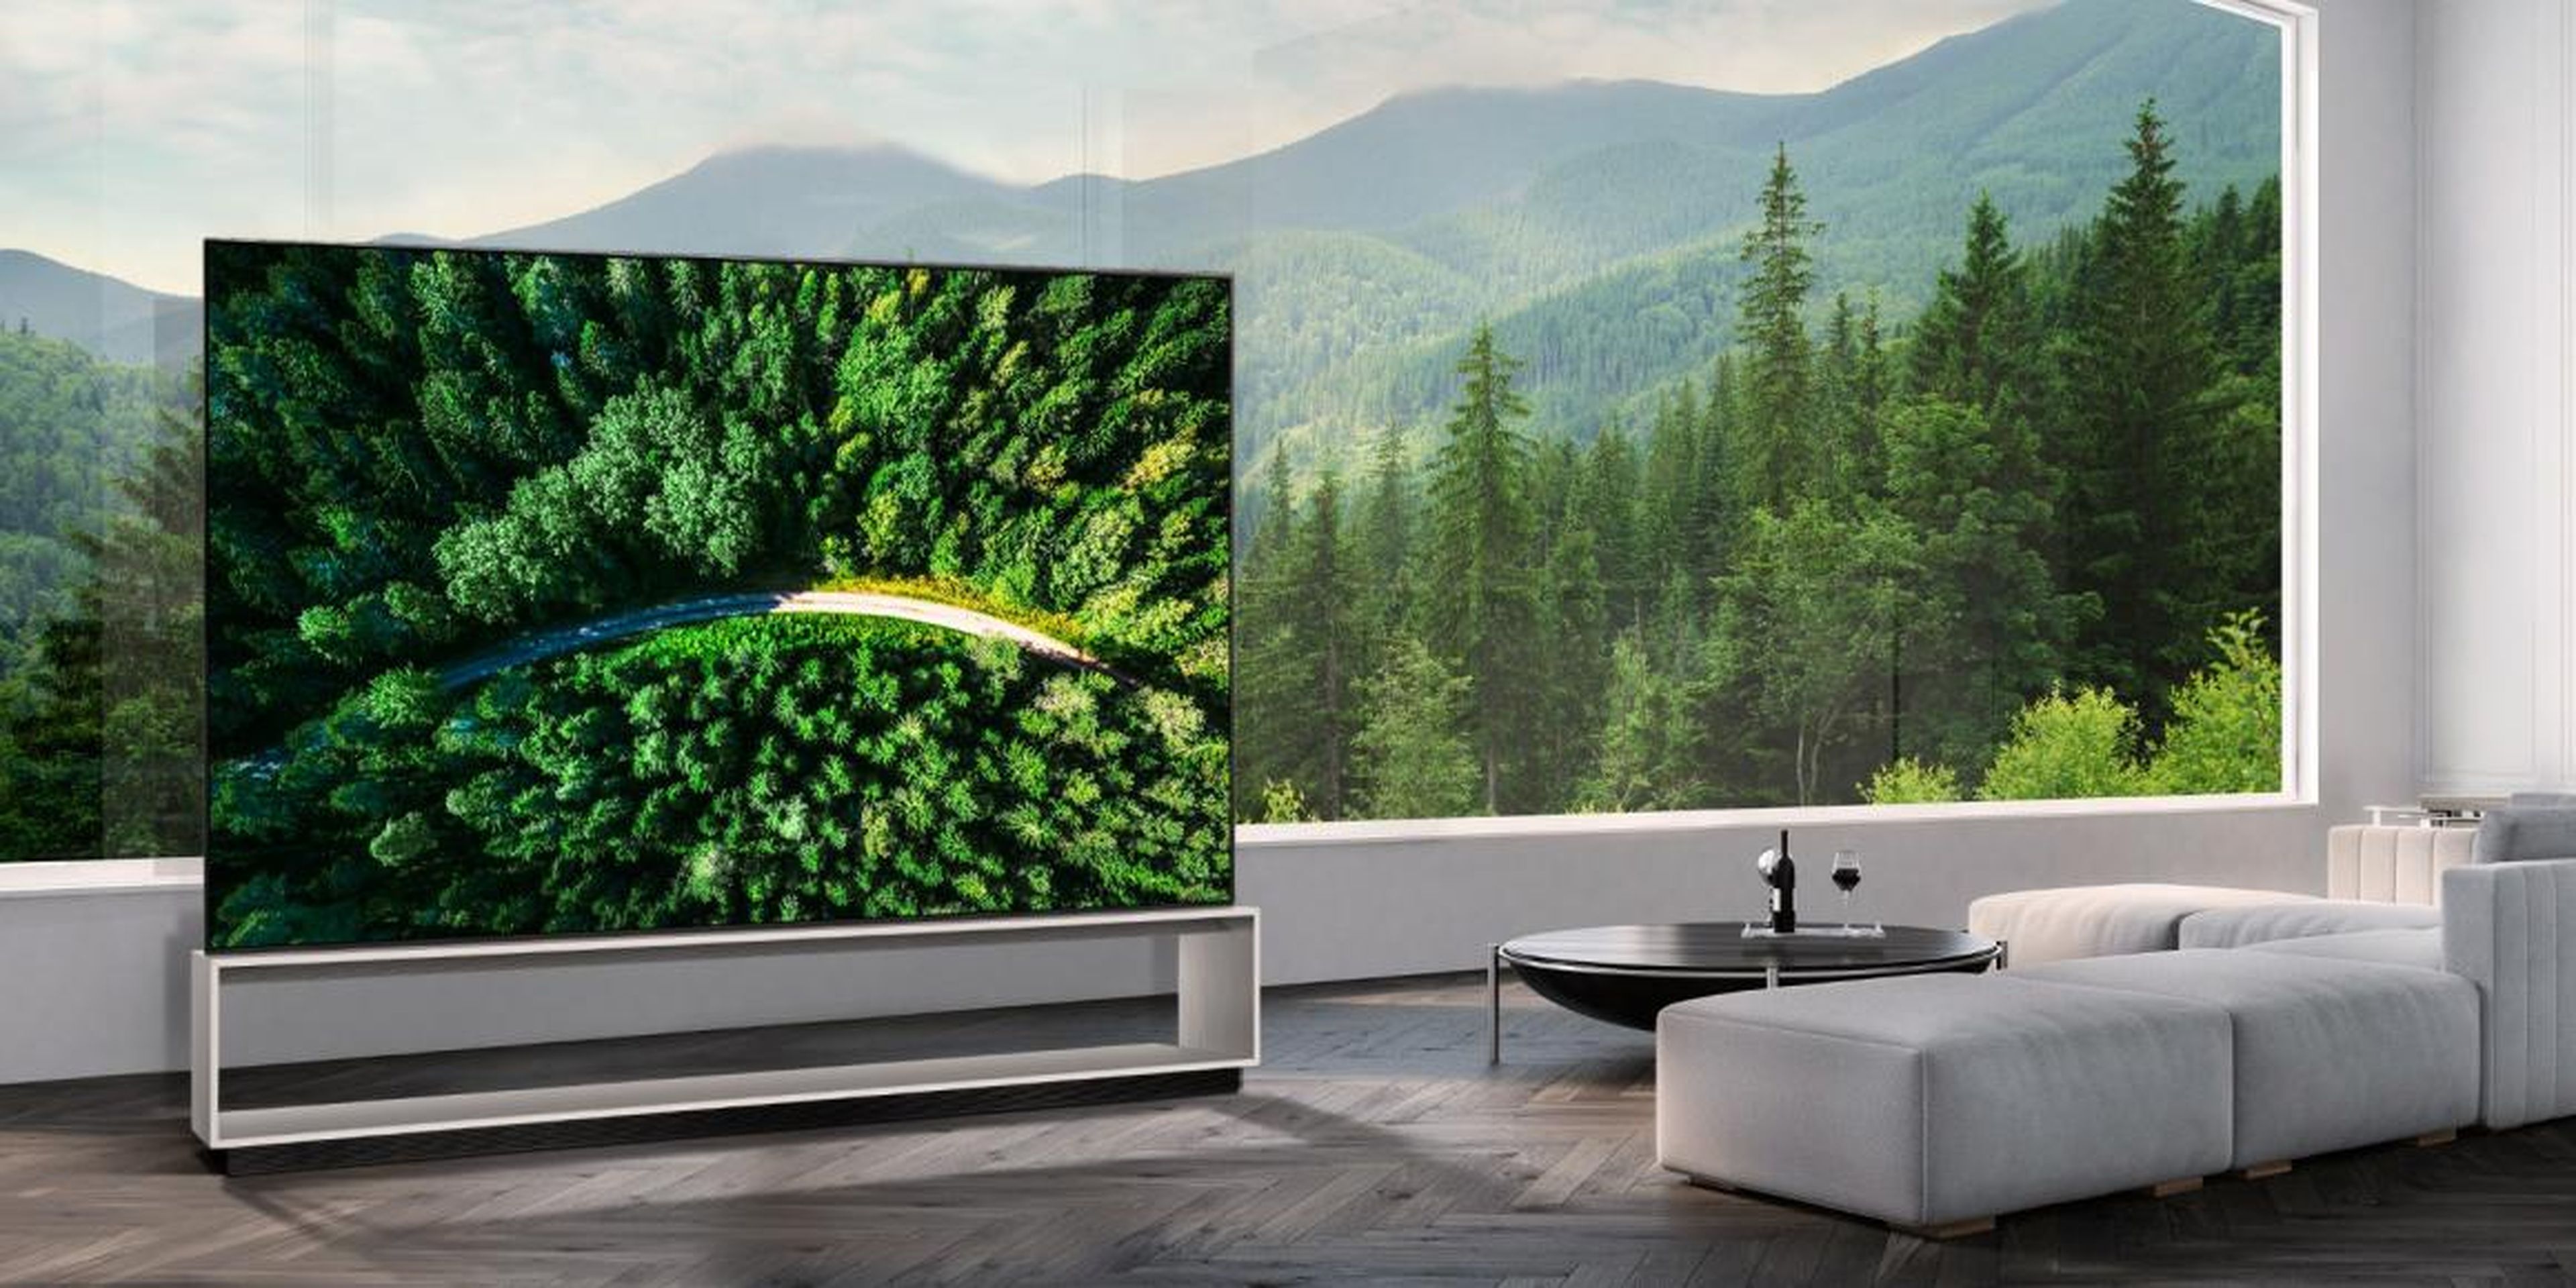 The LG 88Z9 is an 88-inch 8K OLED TV with a price tag of $42,000.